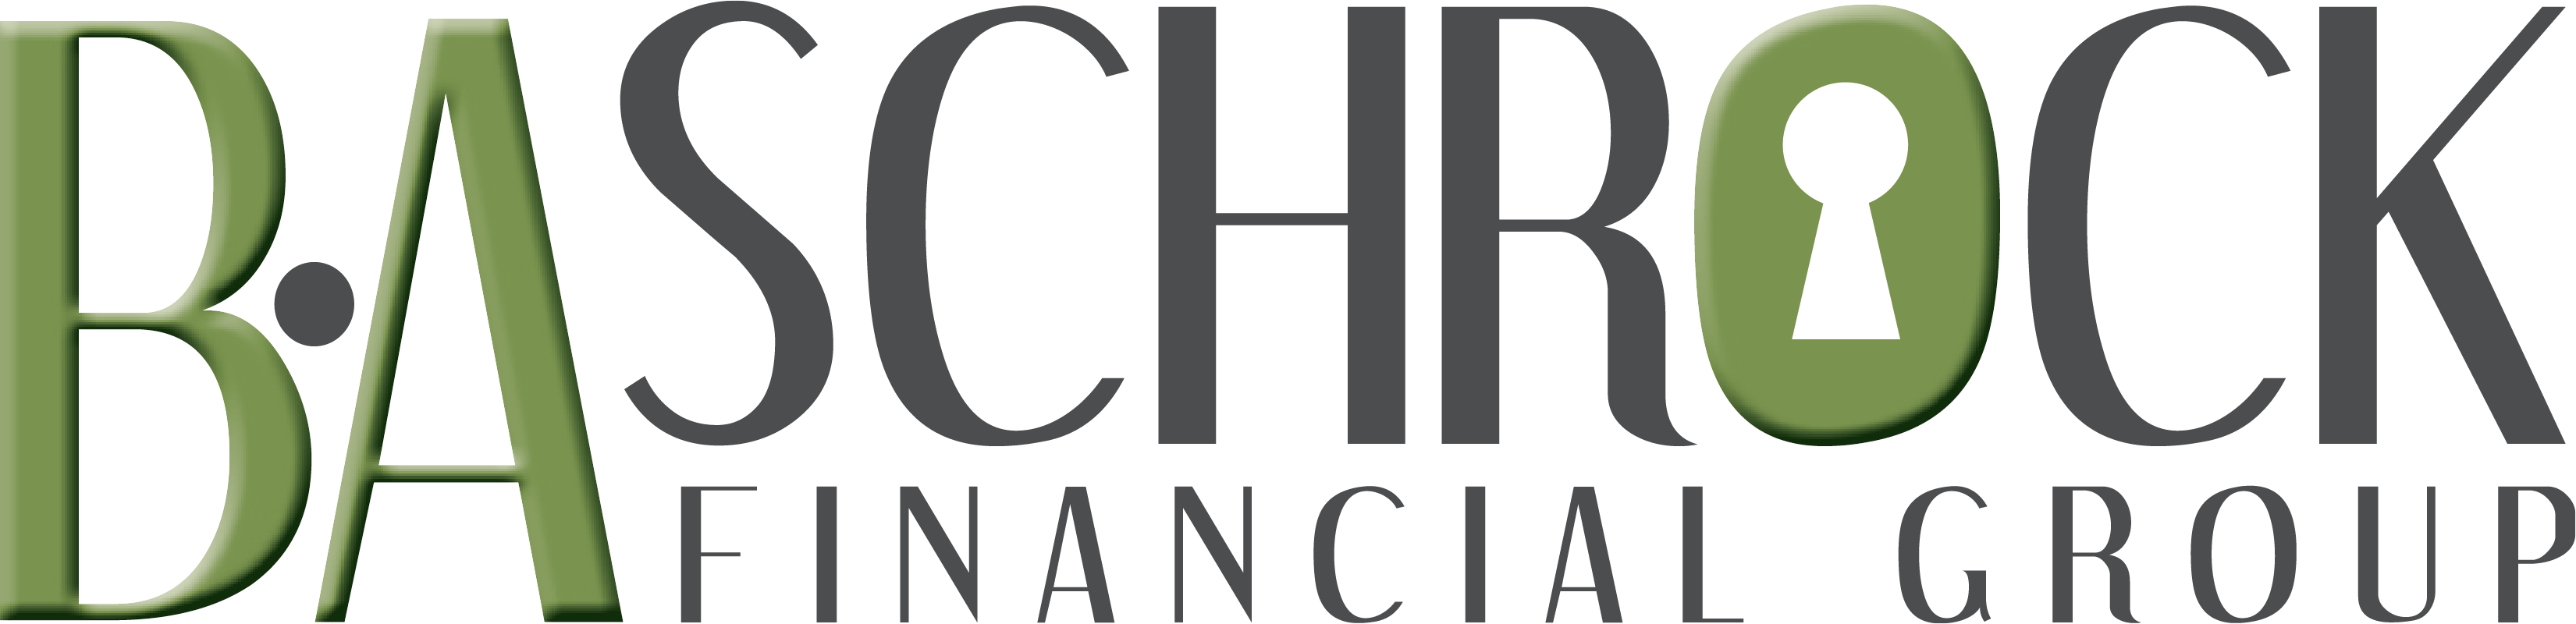 B.A. Schrock Financial Group | Ben Schrock